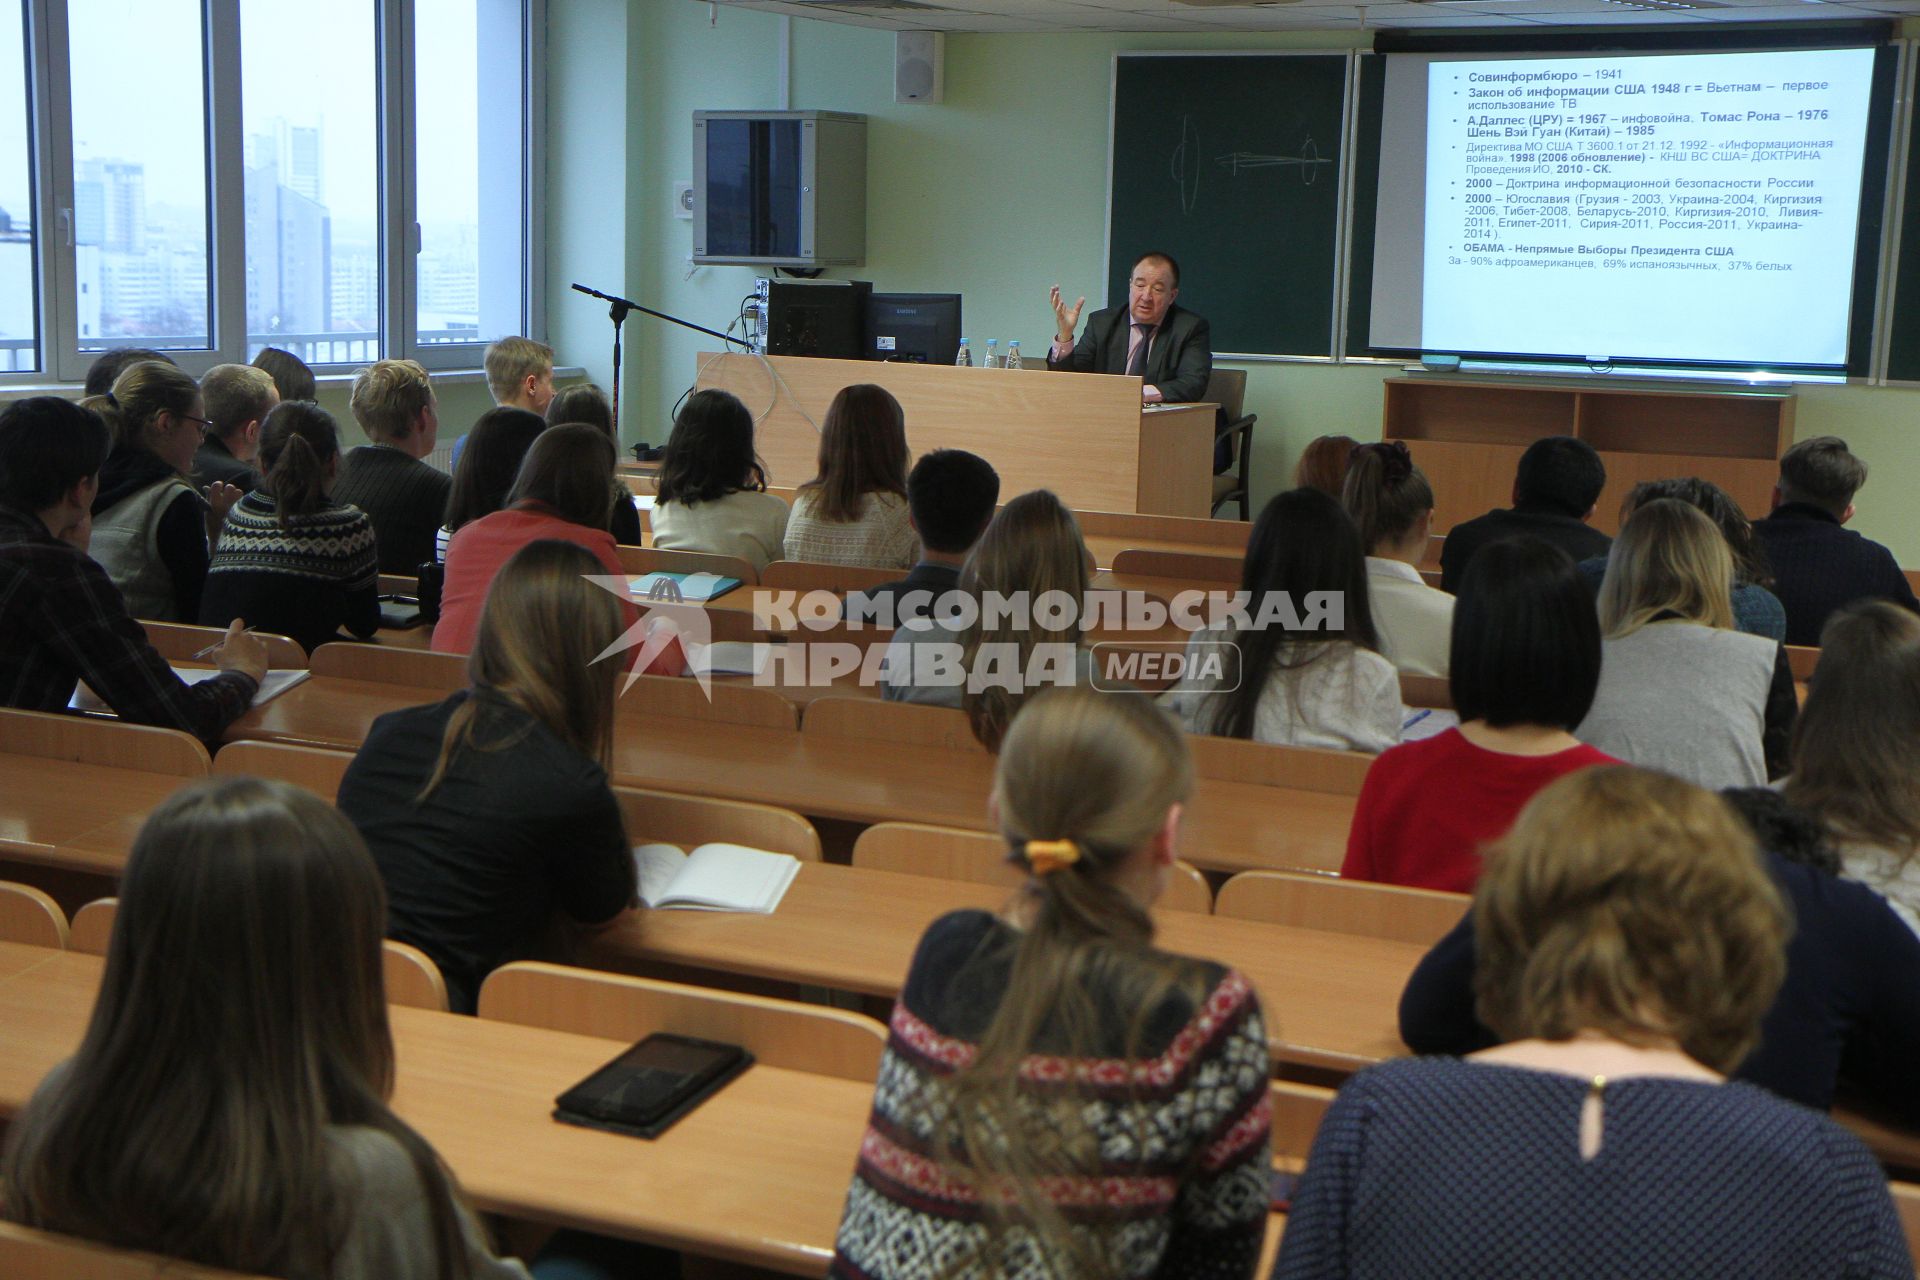 Белоруссия, Минск. Политолог, доктор политических наук Игорь Панарин читает лекцию студентам.